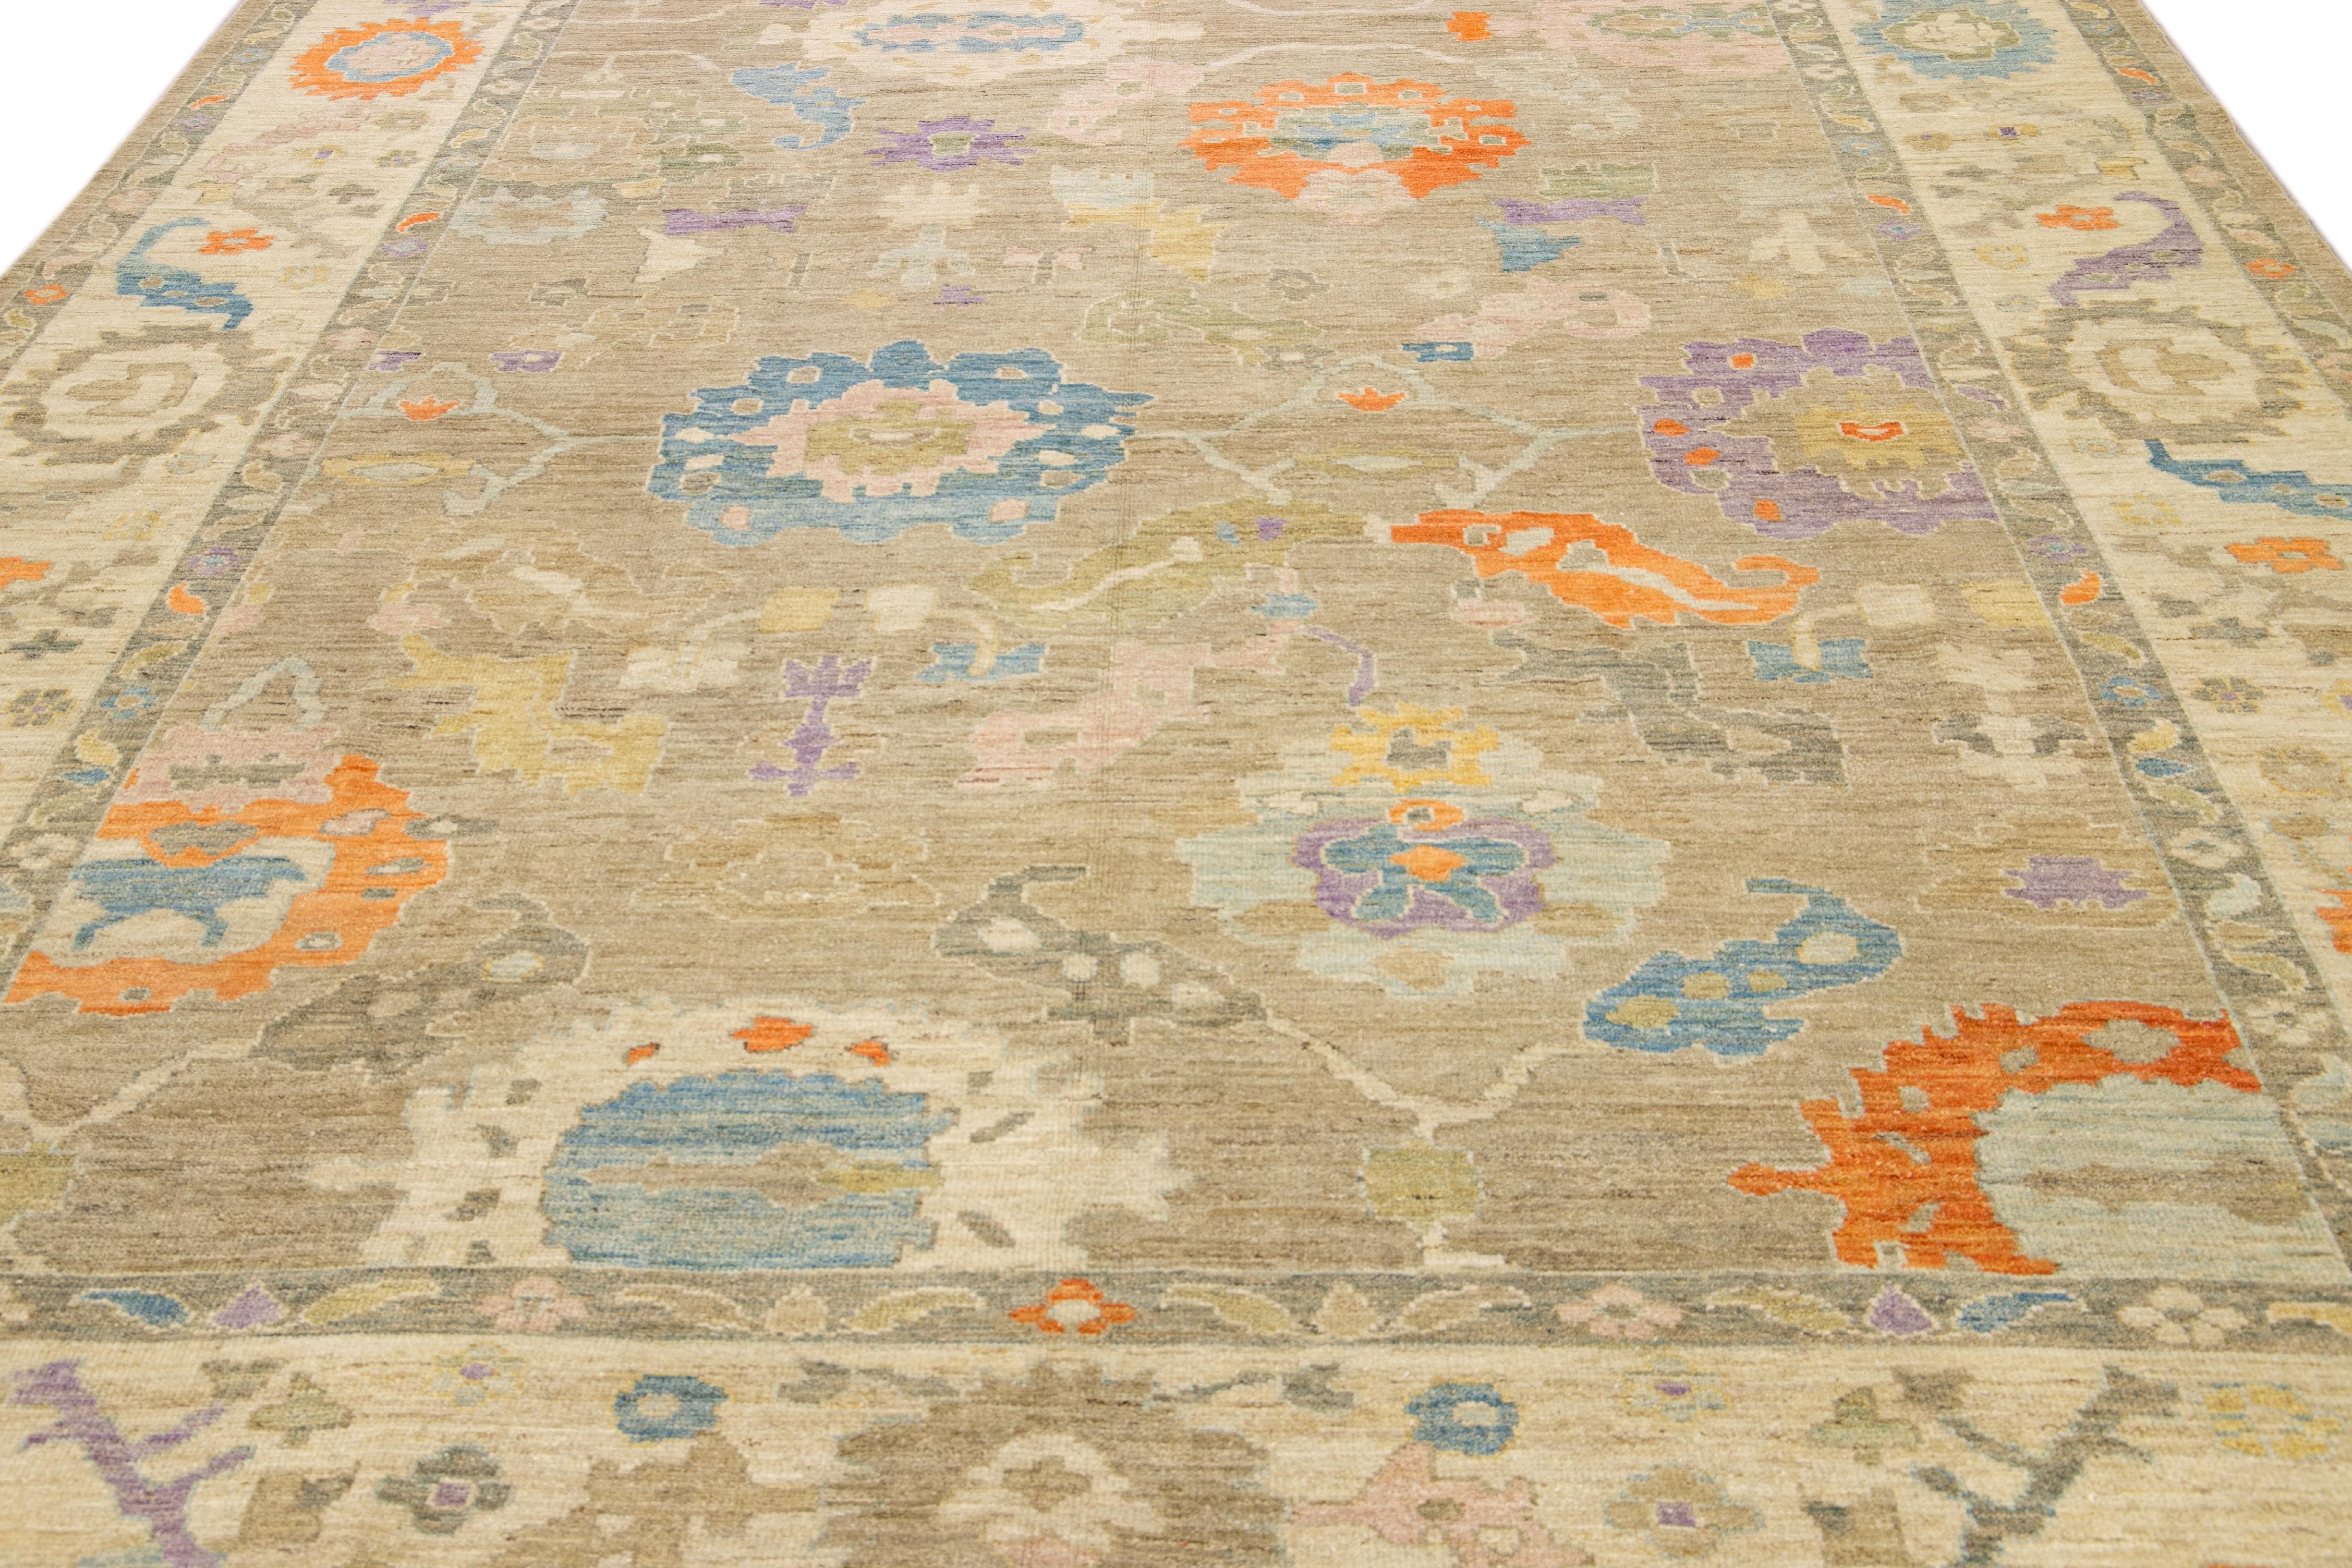 Ce superbe tapis Sultanabad noué à la main présente un design moderne sur une base marron clair. Le tapis persan est bordé d'un cadre beige et agrémenté de nombreuses couleurs qui forment un motif floral attrayant.

Ce tapis mesure 10'4